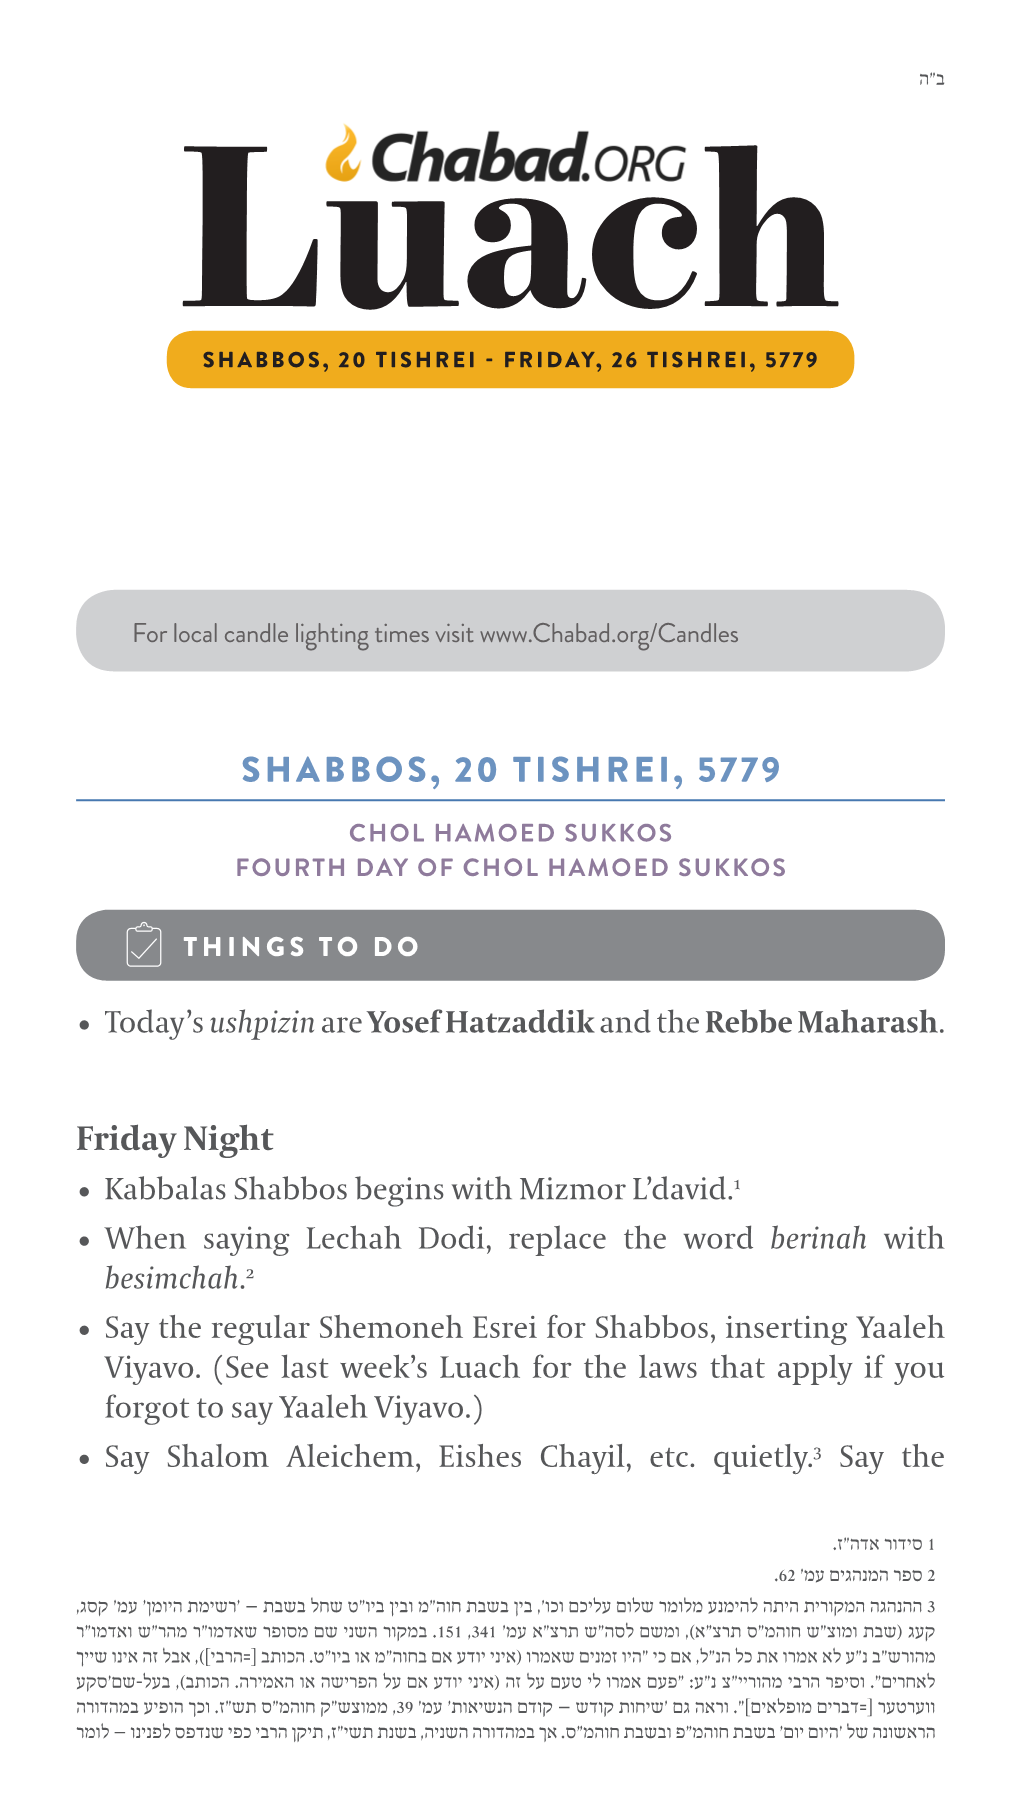 Shabbos, 20 Tishrei, 5779